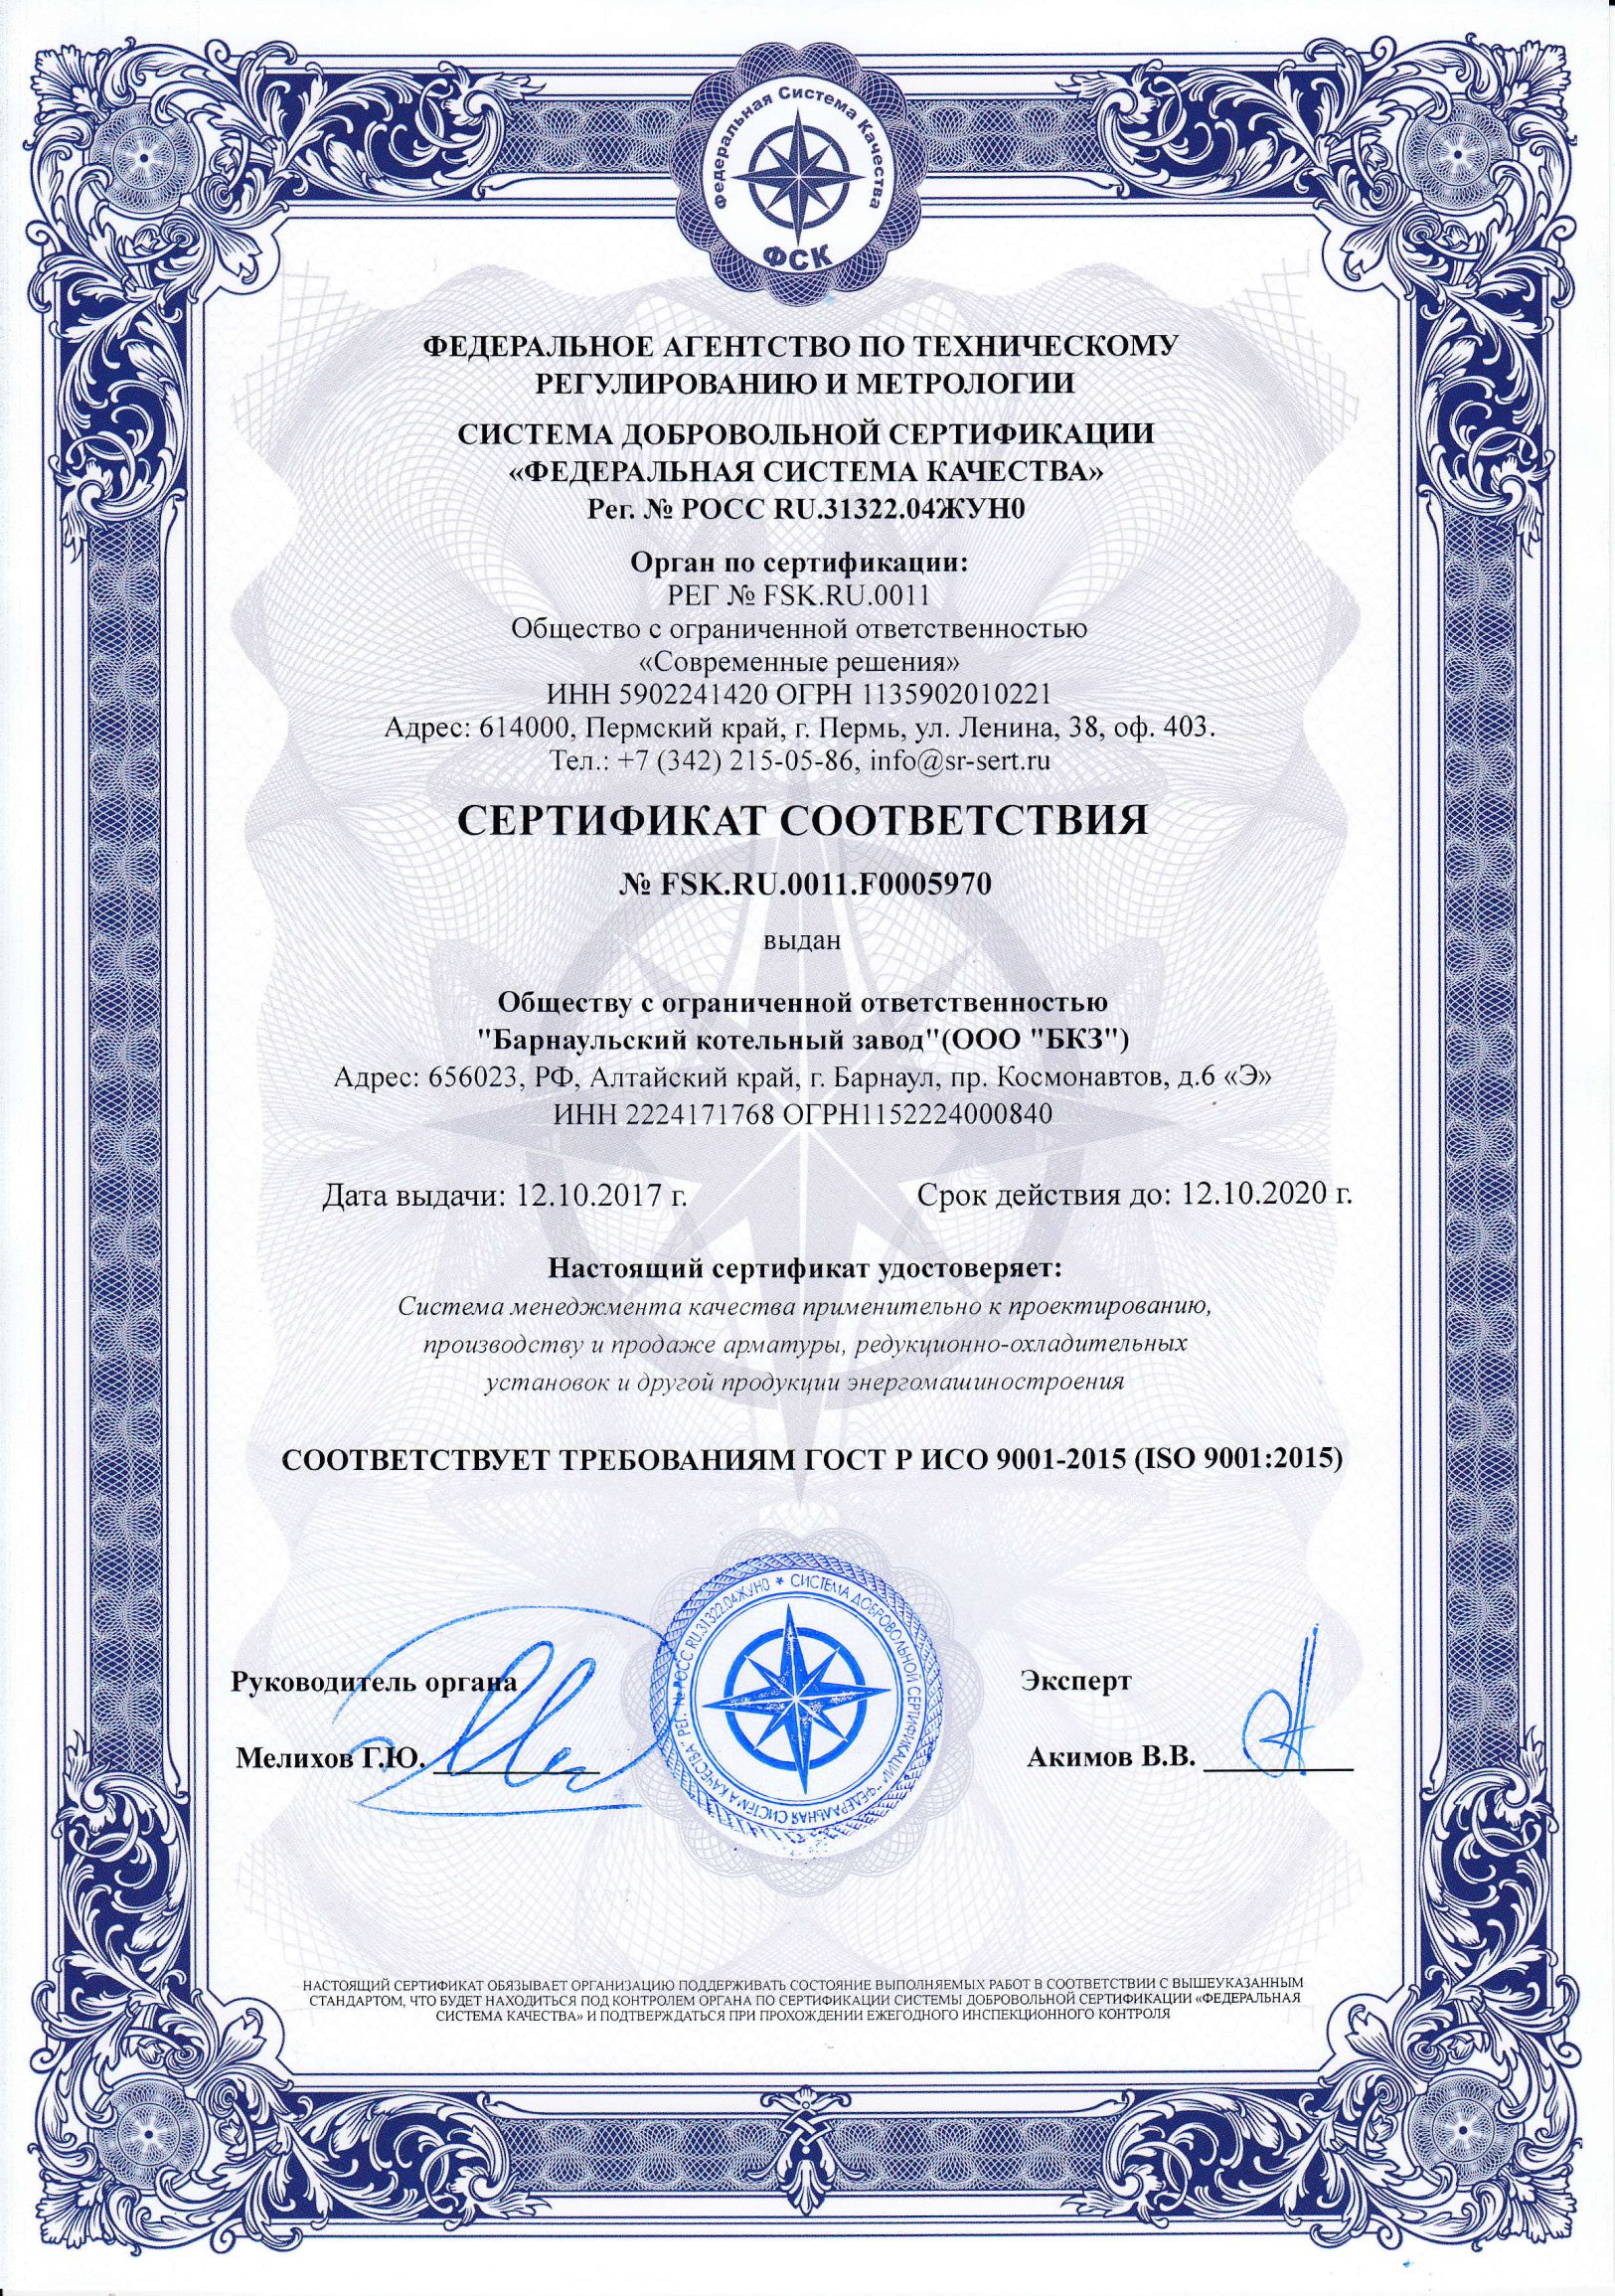 ООО БКЗ получил Сертификат СМК на соответствие требованиям ГОСТ Р ИСО 9001 (ISO 9001:2015)